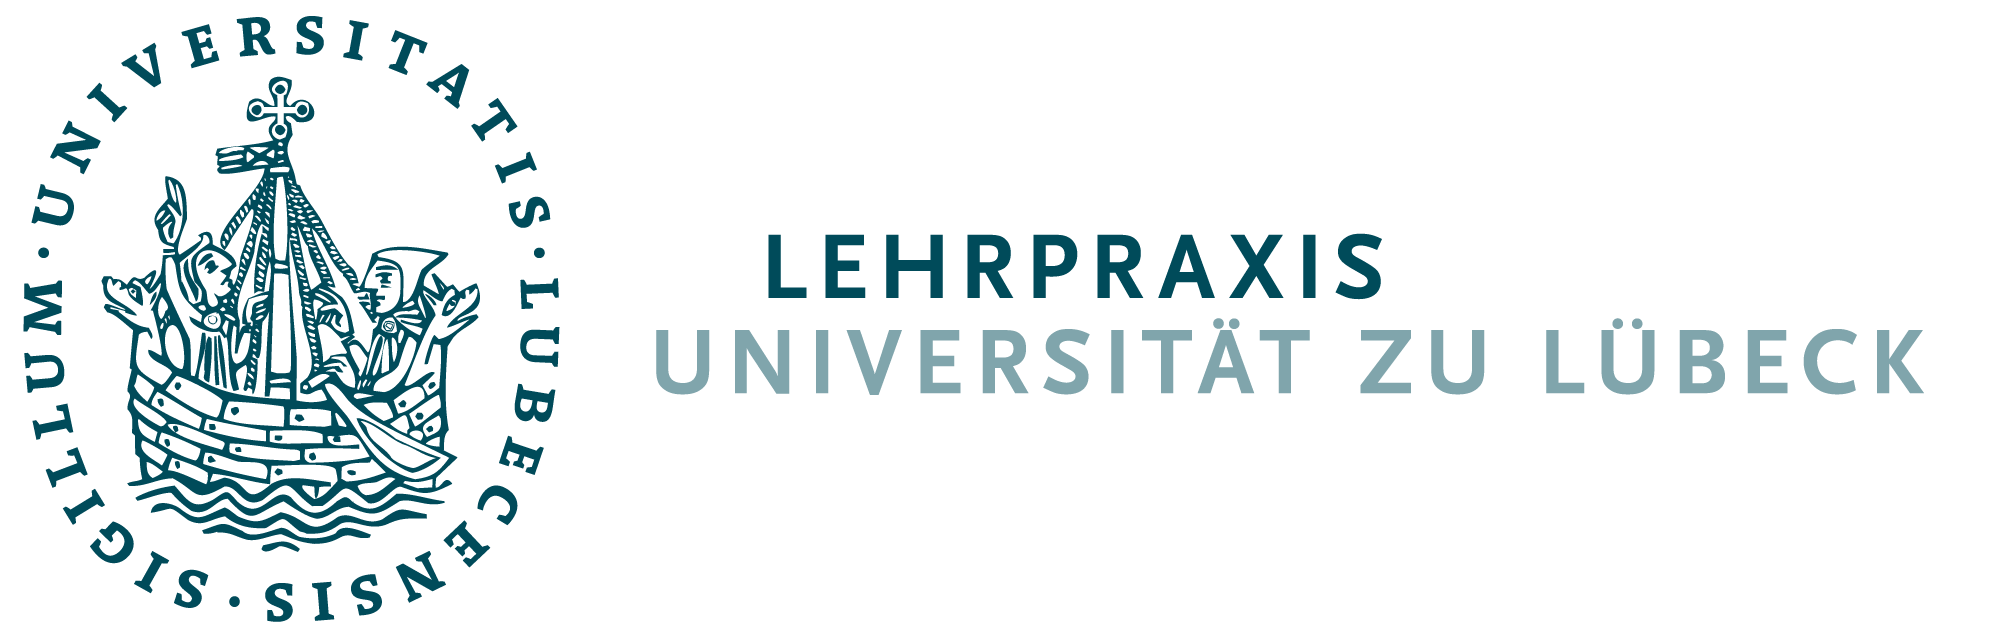 Lehrpraxis Universität zu Lübeck